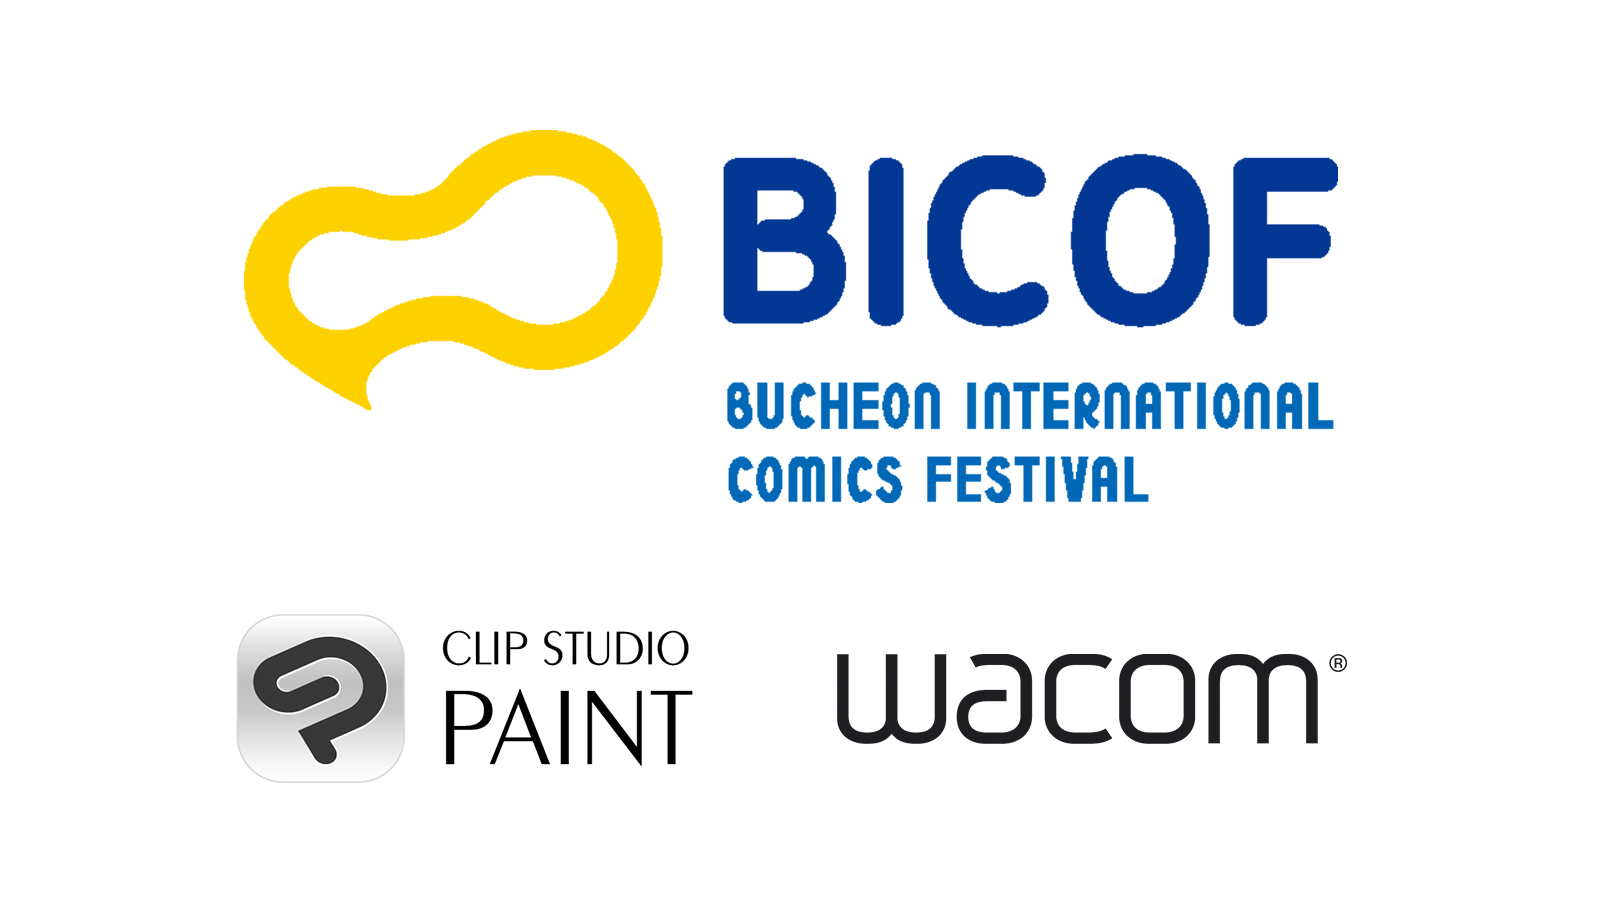 イラスト・マンガ・Webtoon・アニメーション制作アプリ「CLIP STUDIO PAINT」が韓国最大のマンガイベント「富川国際漫画フェスティバル（BICOF）」に韓国ワコムと共同出展